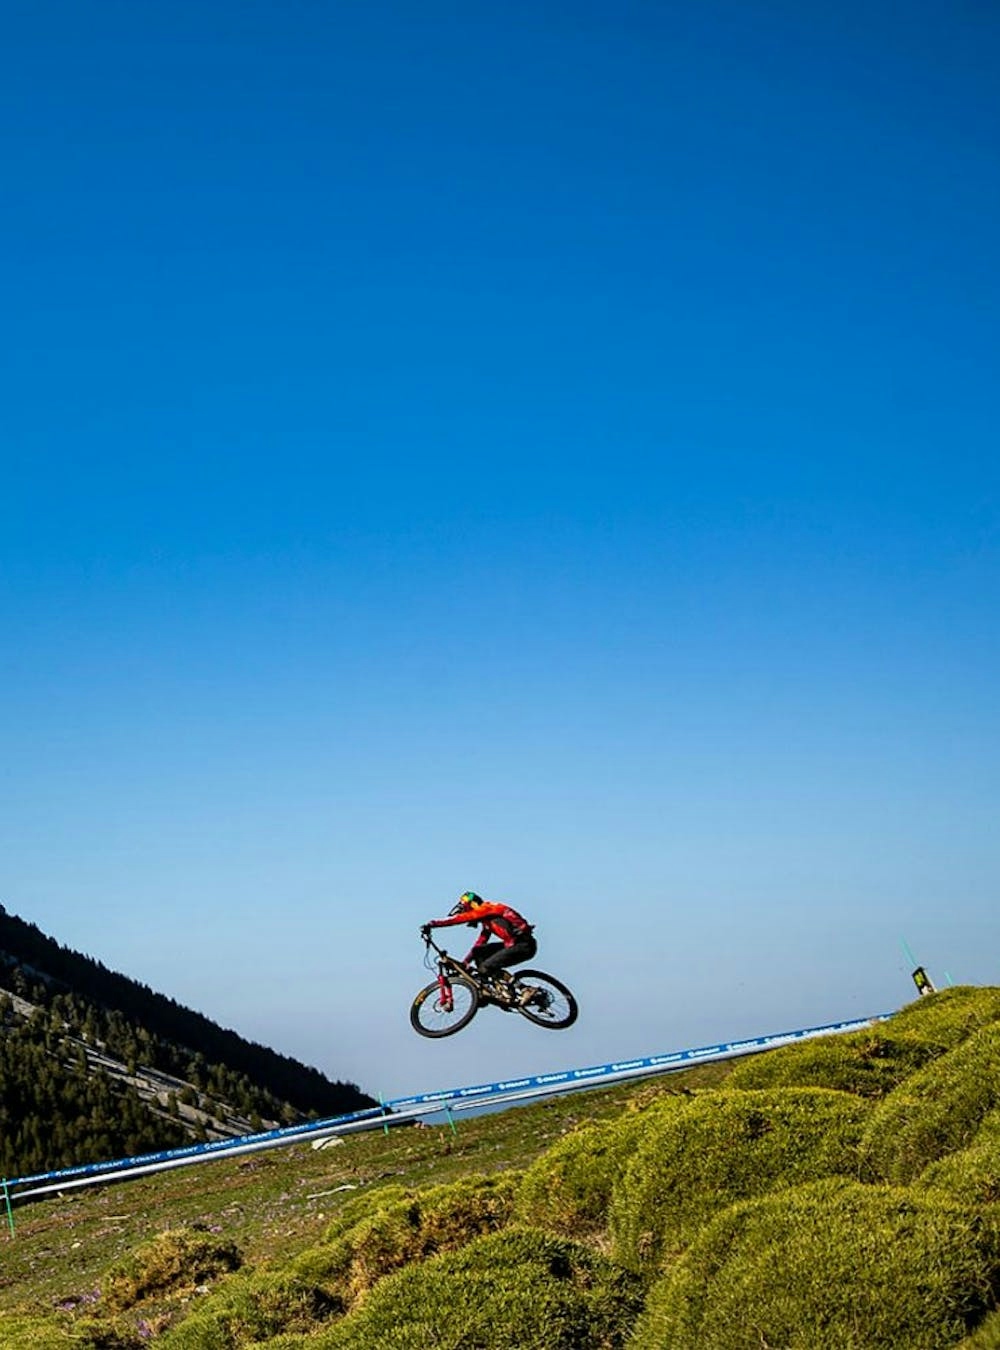 A mountain biker jumping on a bike between a race course